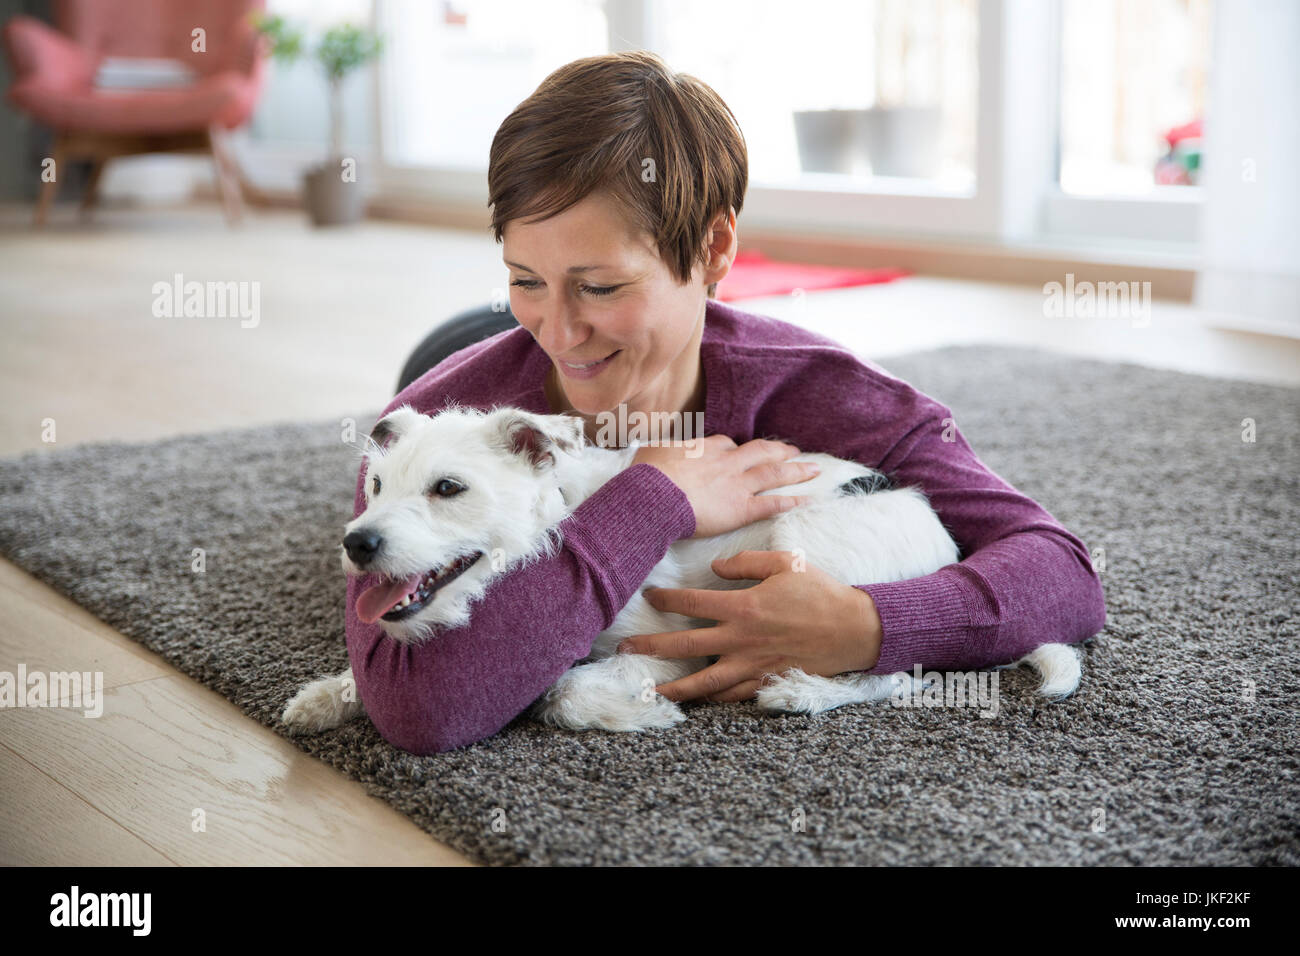 Femme couchée sur un tapis dans le salon hugging her dog Banque D'Images